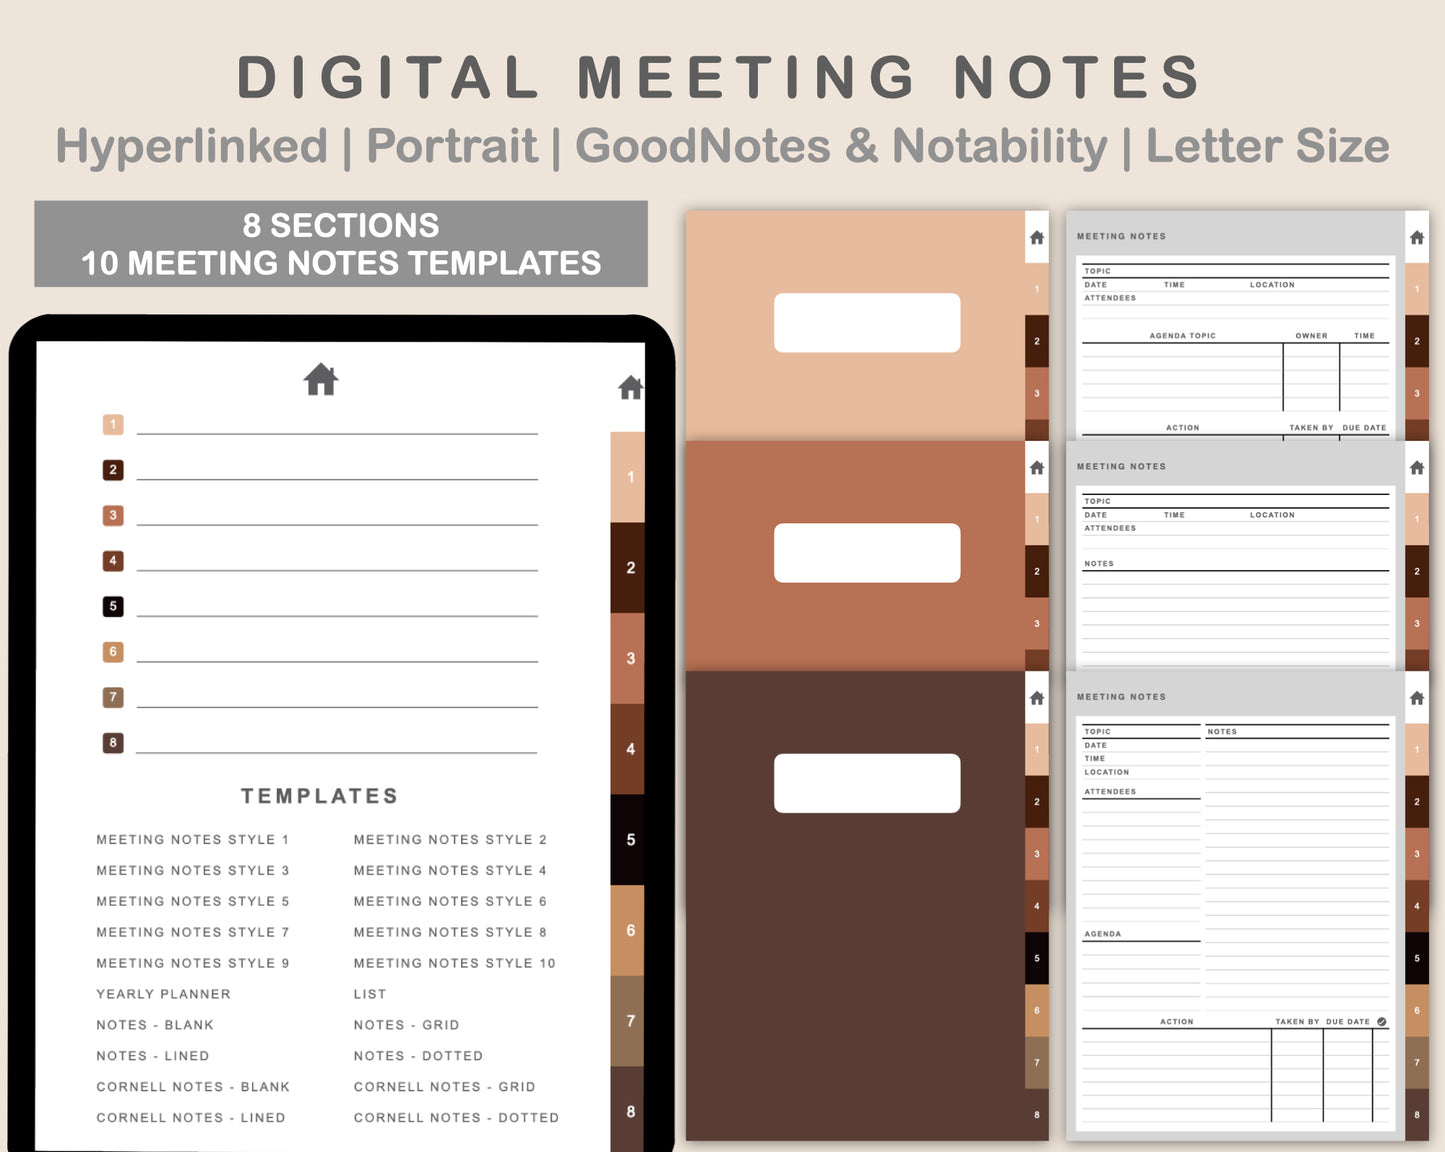 Digital Meeting Notes - Portrait - Brown Coffee